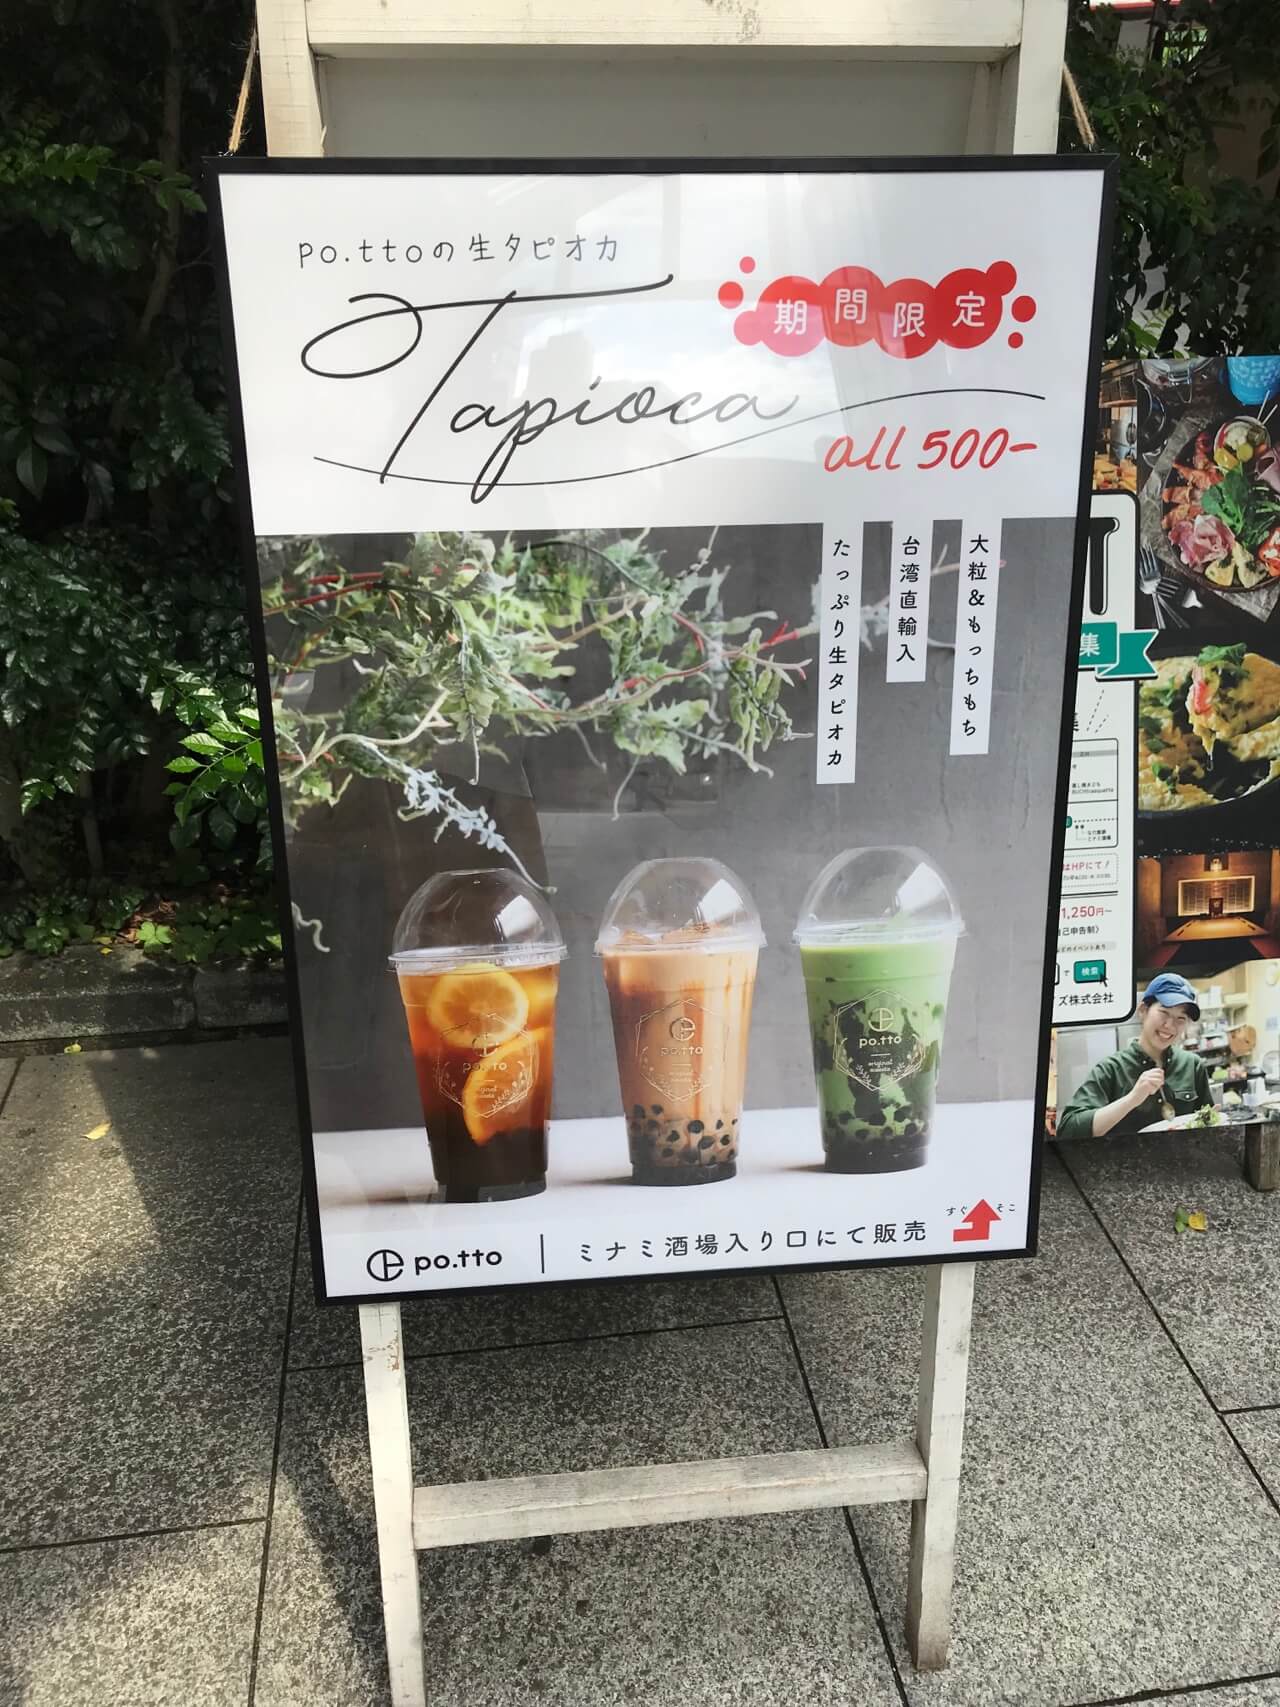 東岡崎でカフェポットの生タピオカドリンクが限定販売開始 岡崎にゅーす